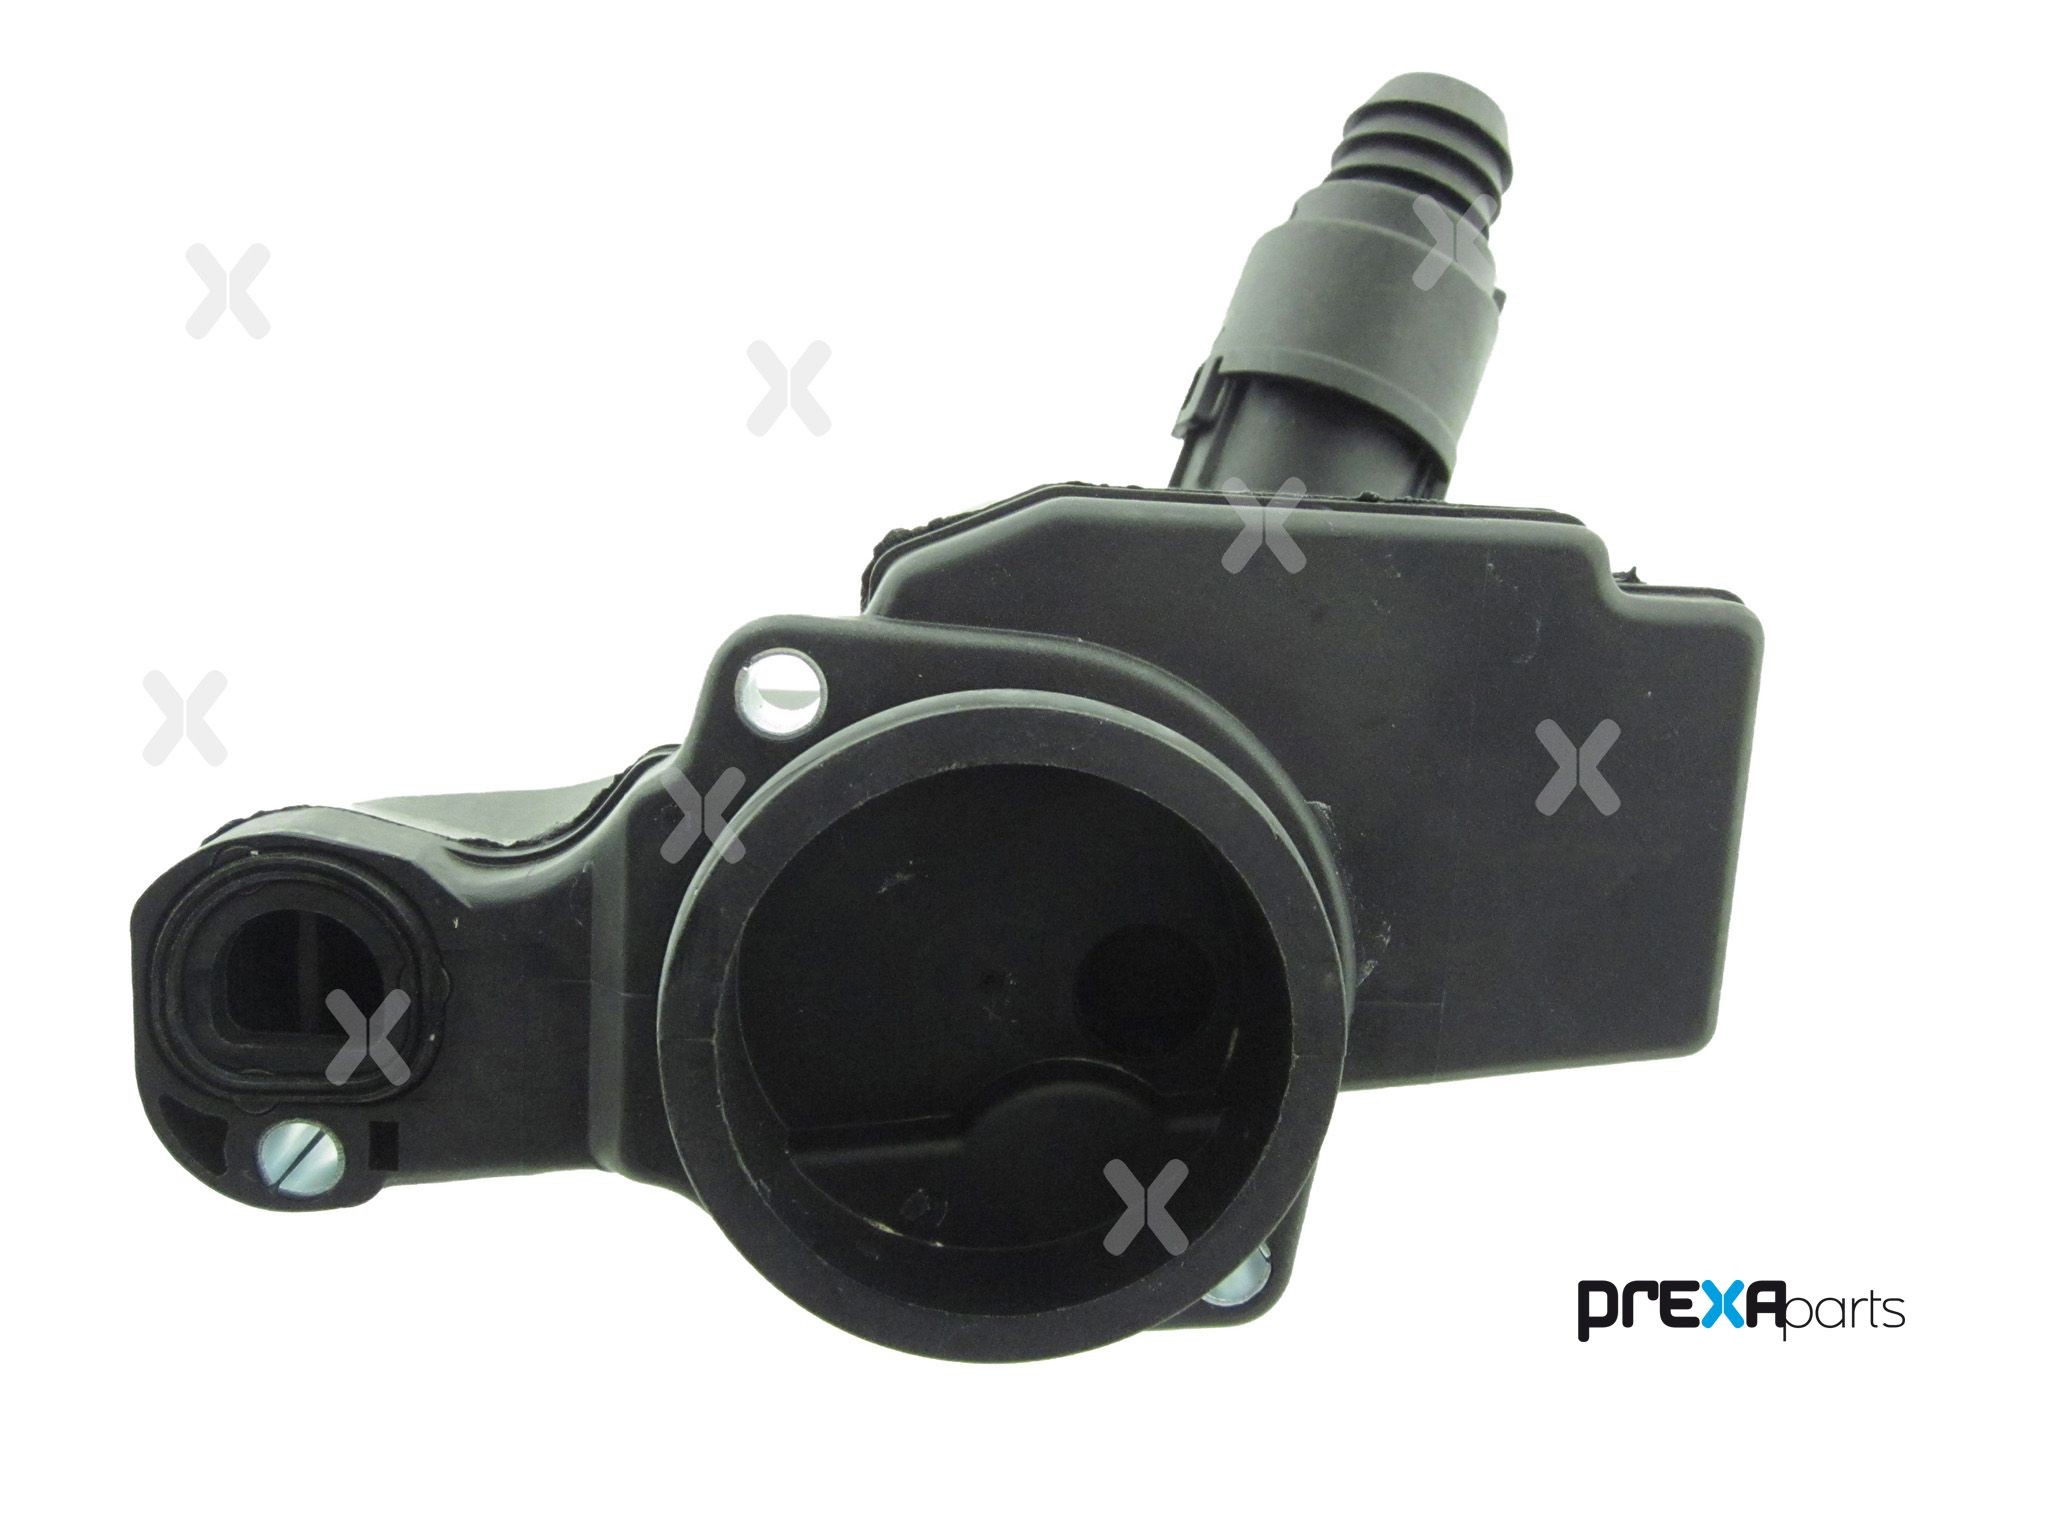 PREXAparts Exhaust sensor P304043 suitable for MERCEDES-BENZ E-Class, C-Class